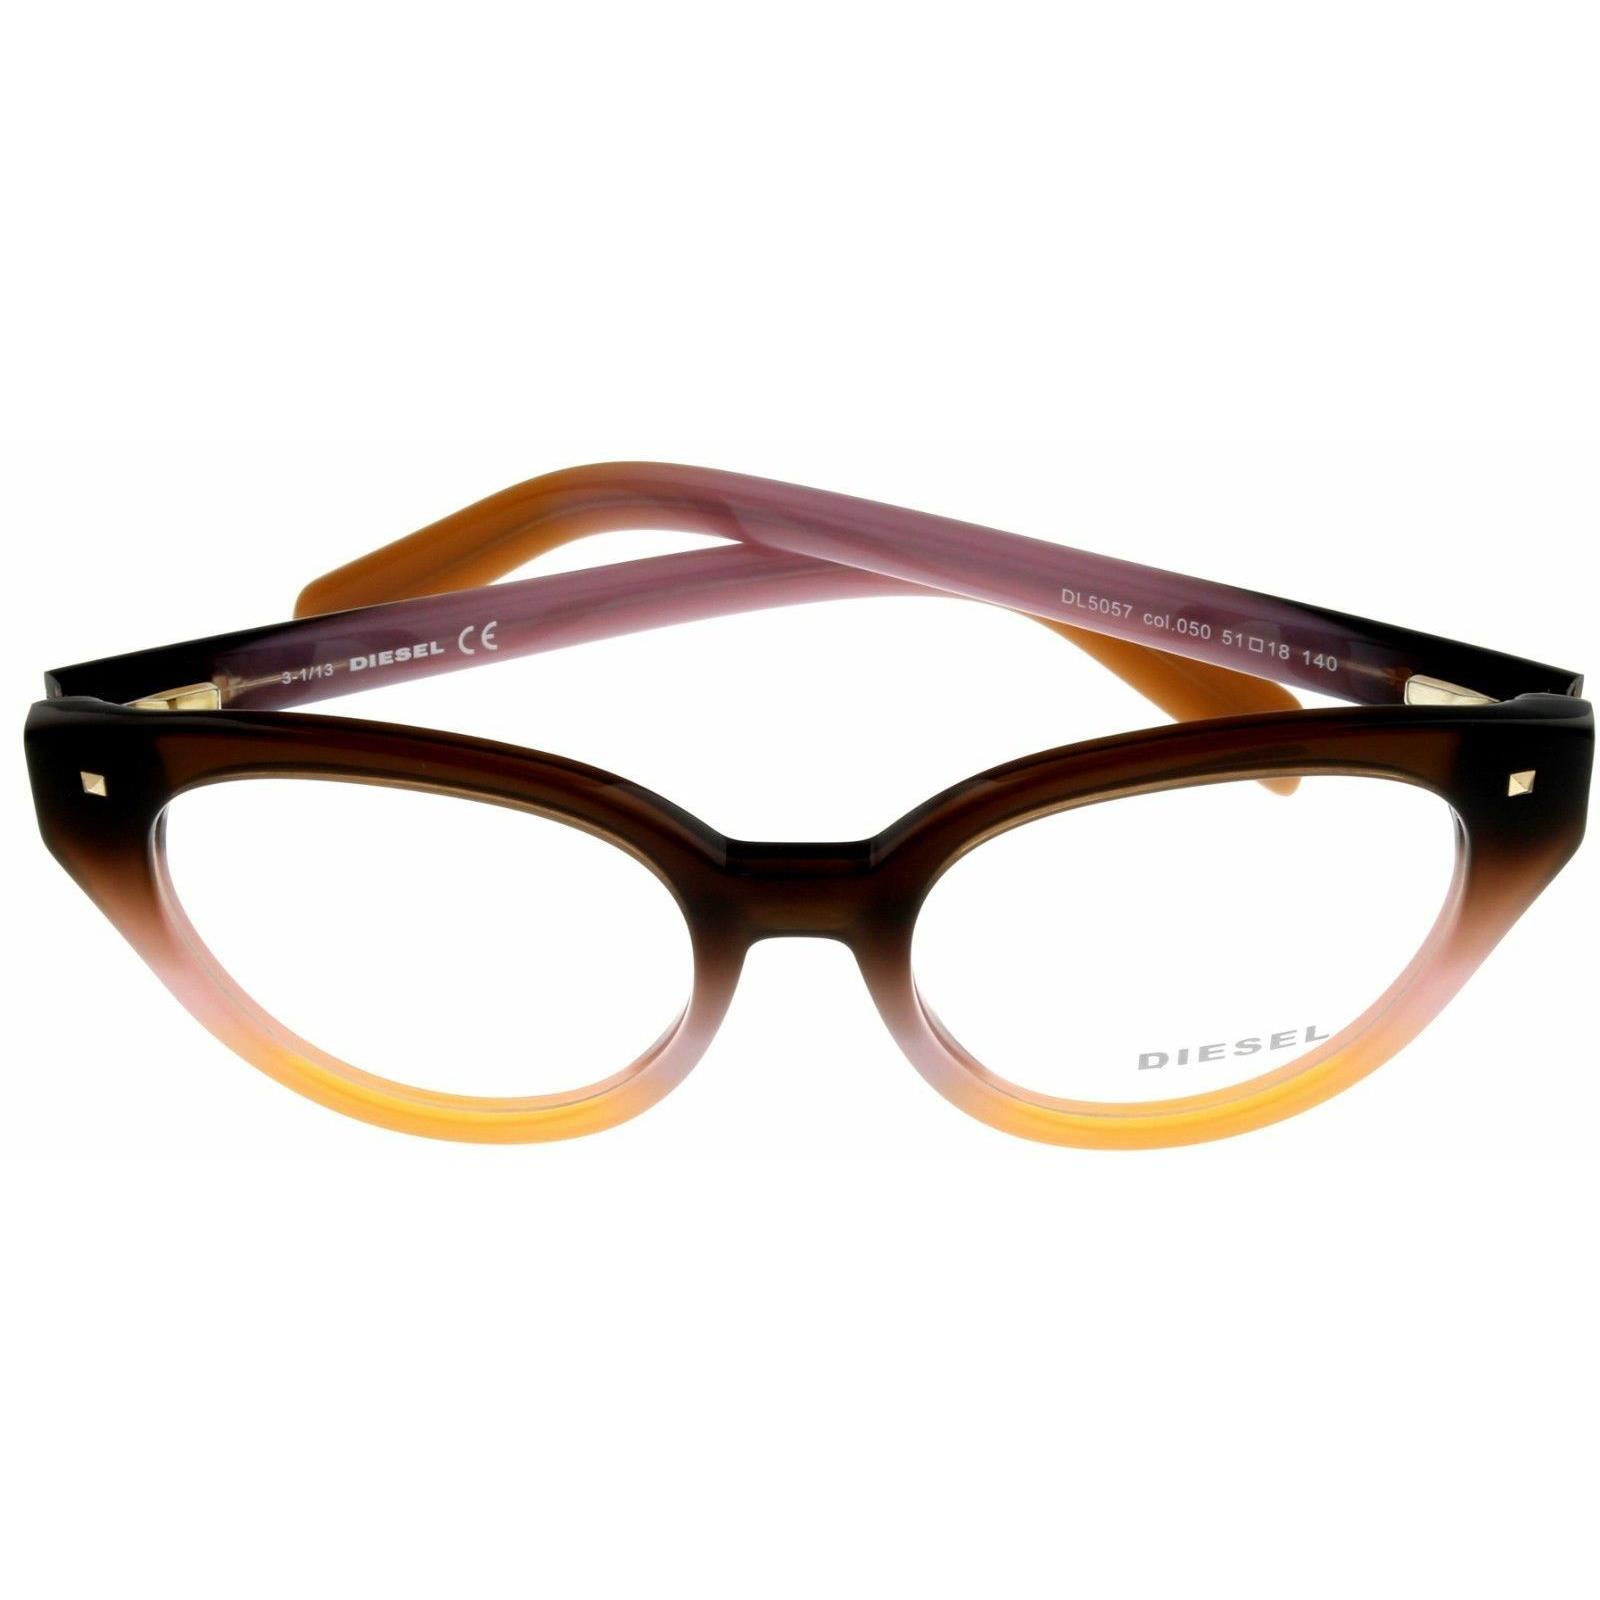 Diesel Women Eyeglasses Frame Brown Cateye DL5057 050